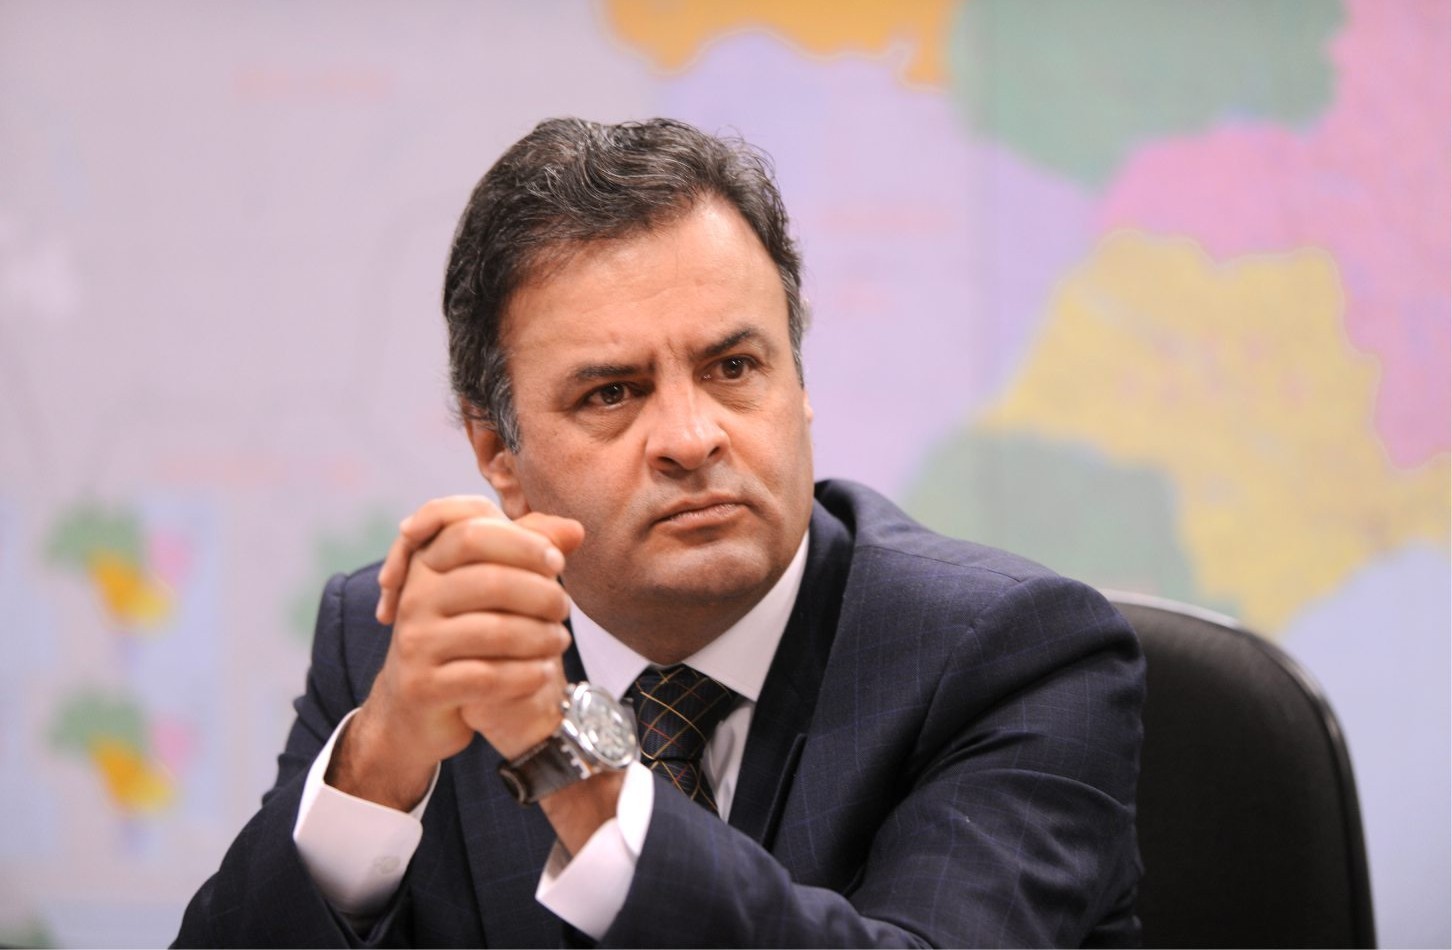 Senador e presidente do PSDB, Aécio Neves, afirmou nesta quinta-feira (31) que seu partido poderia dar apoio a um governo liderado por Michel Temer  (Foto: Divulgação)